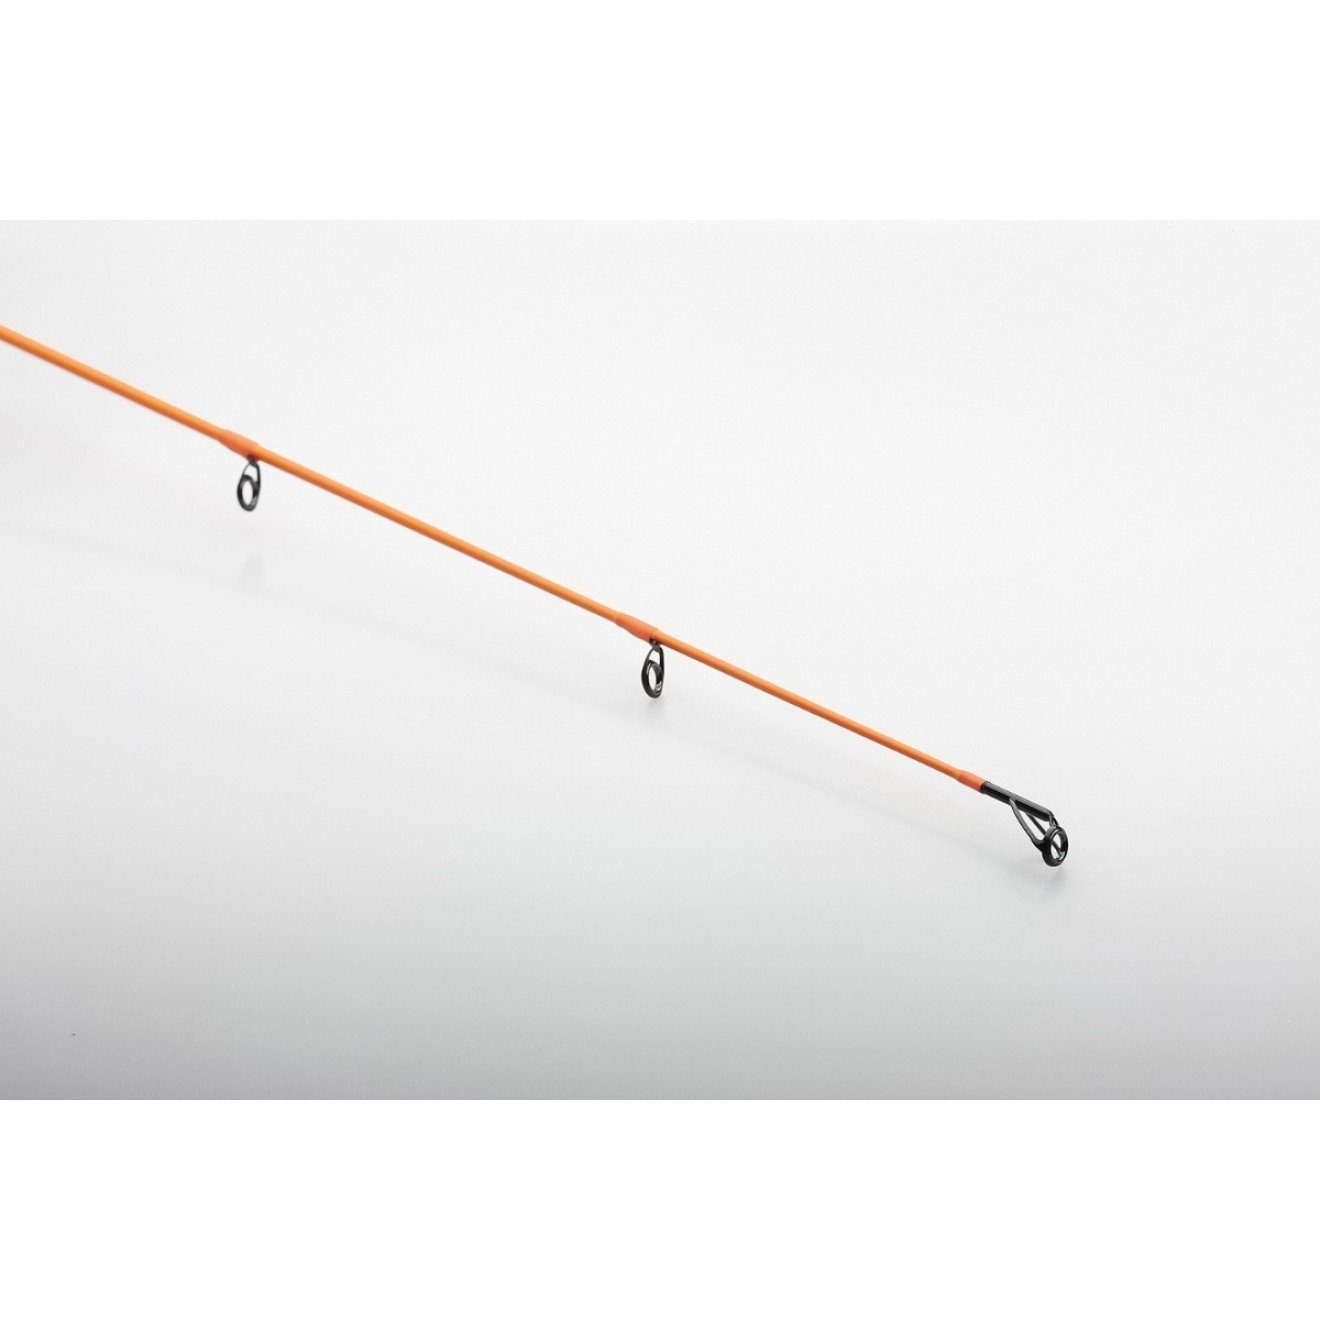 Rod ausbalanciert 2,21m für Gefühl Game Perfekt WG_7-23g Medium Orange 2,13m 2,69m ein optimales Angelruten, 2,51m Savage Gear LTD Spinnrute Spin